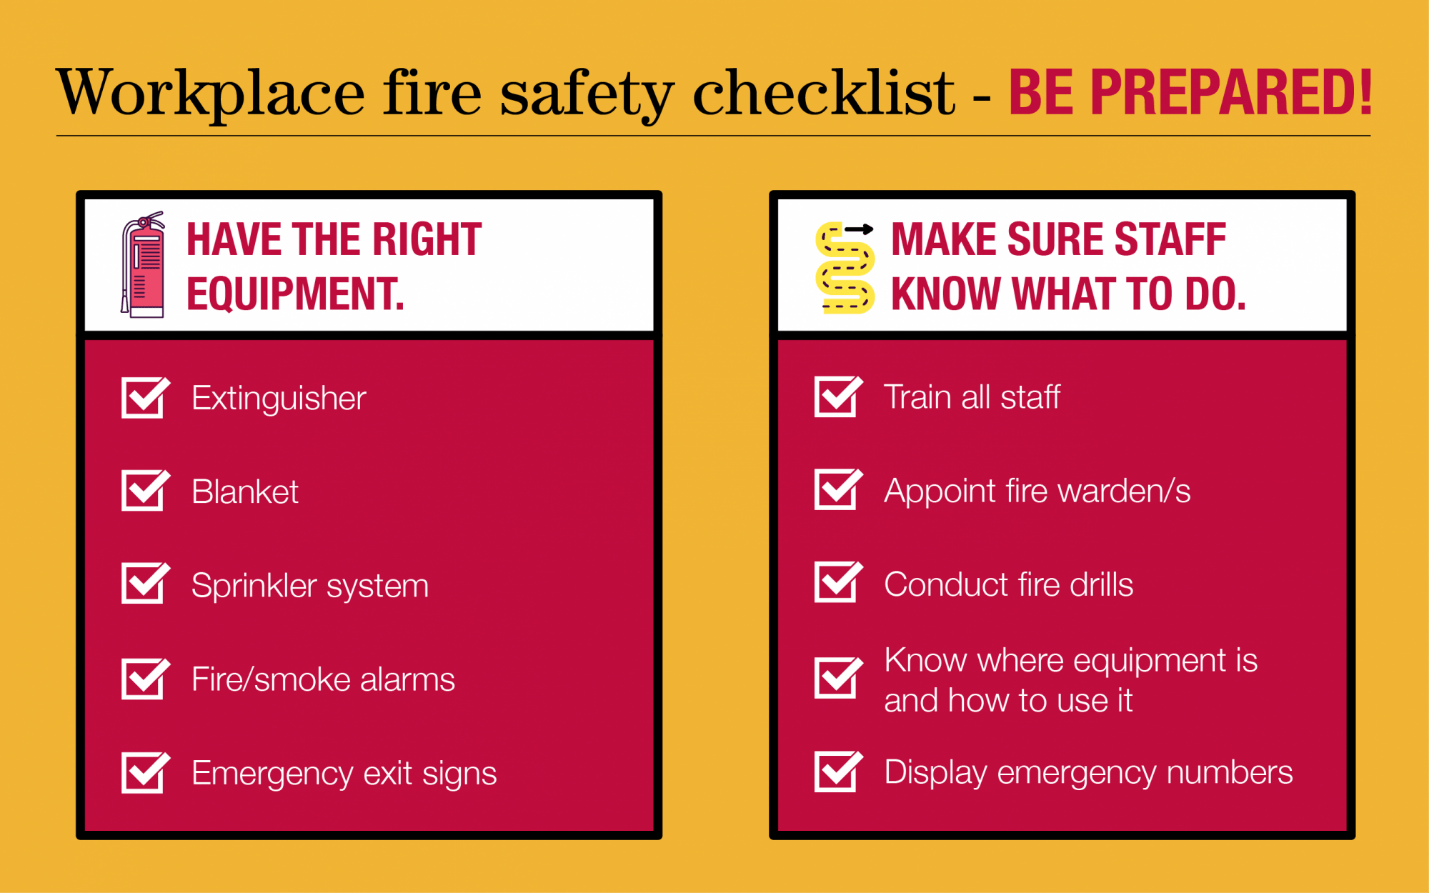 Lista de verificación de seguridad contra incendios en el lugar de trabajo